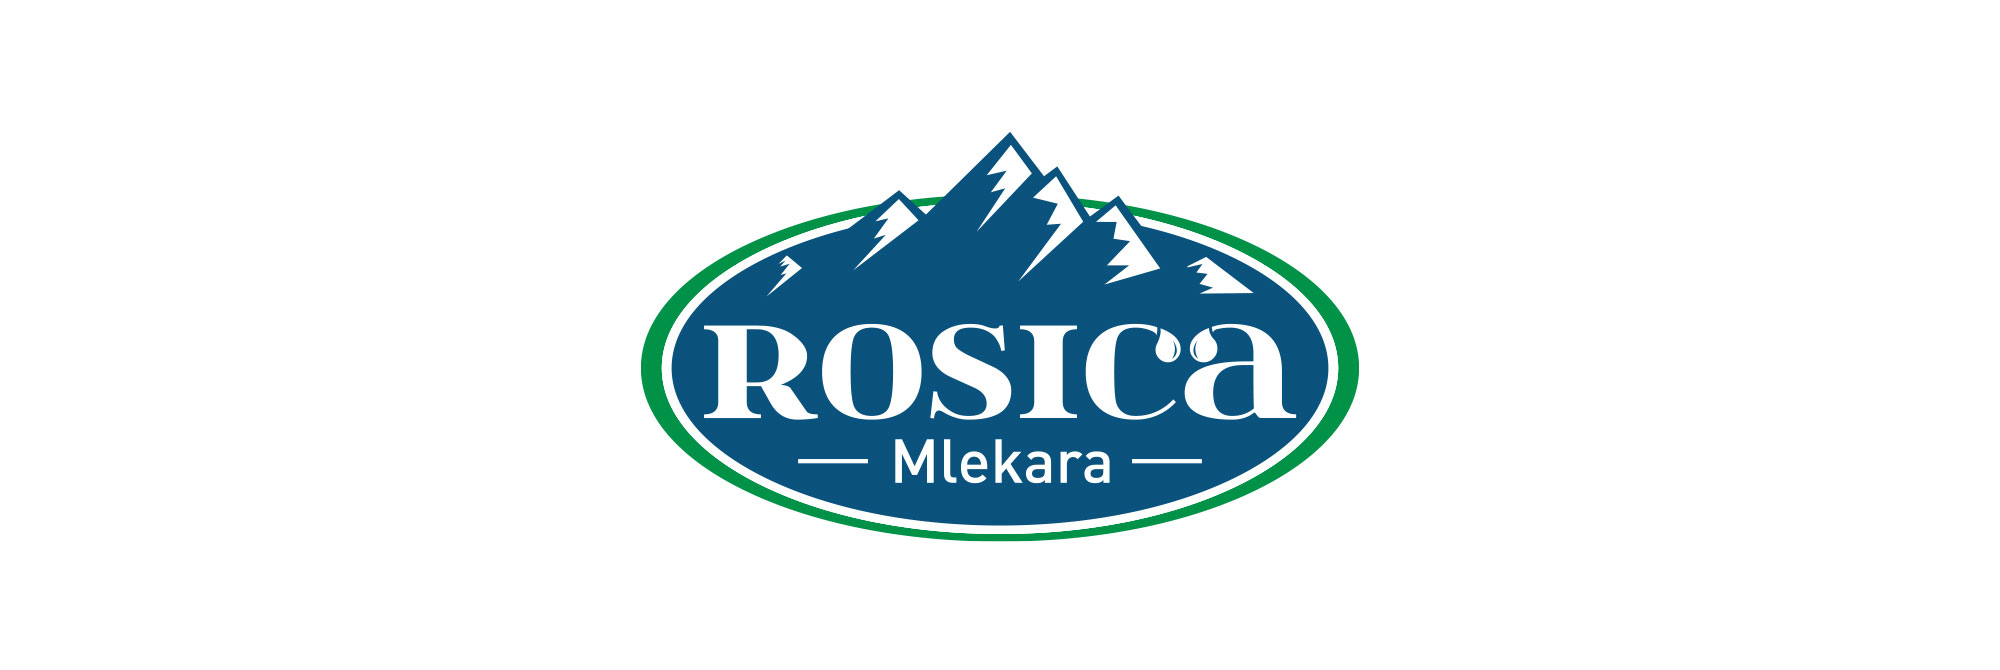 Mlekara Rosica image